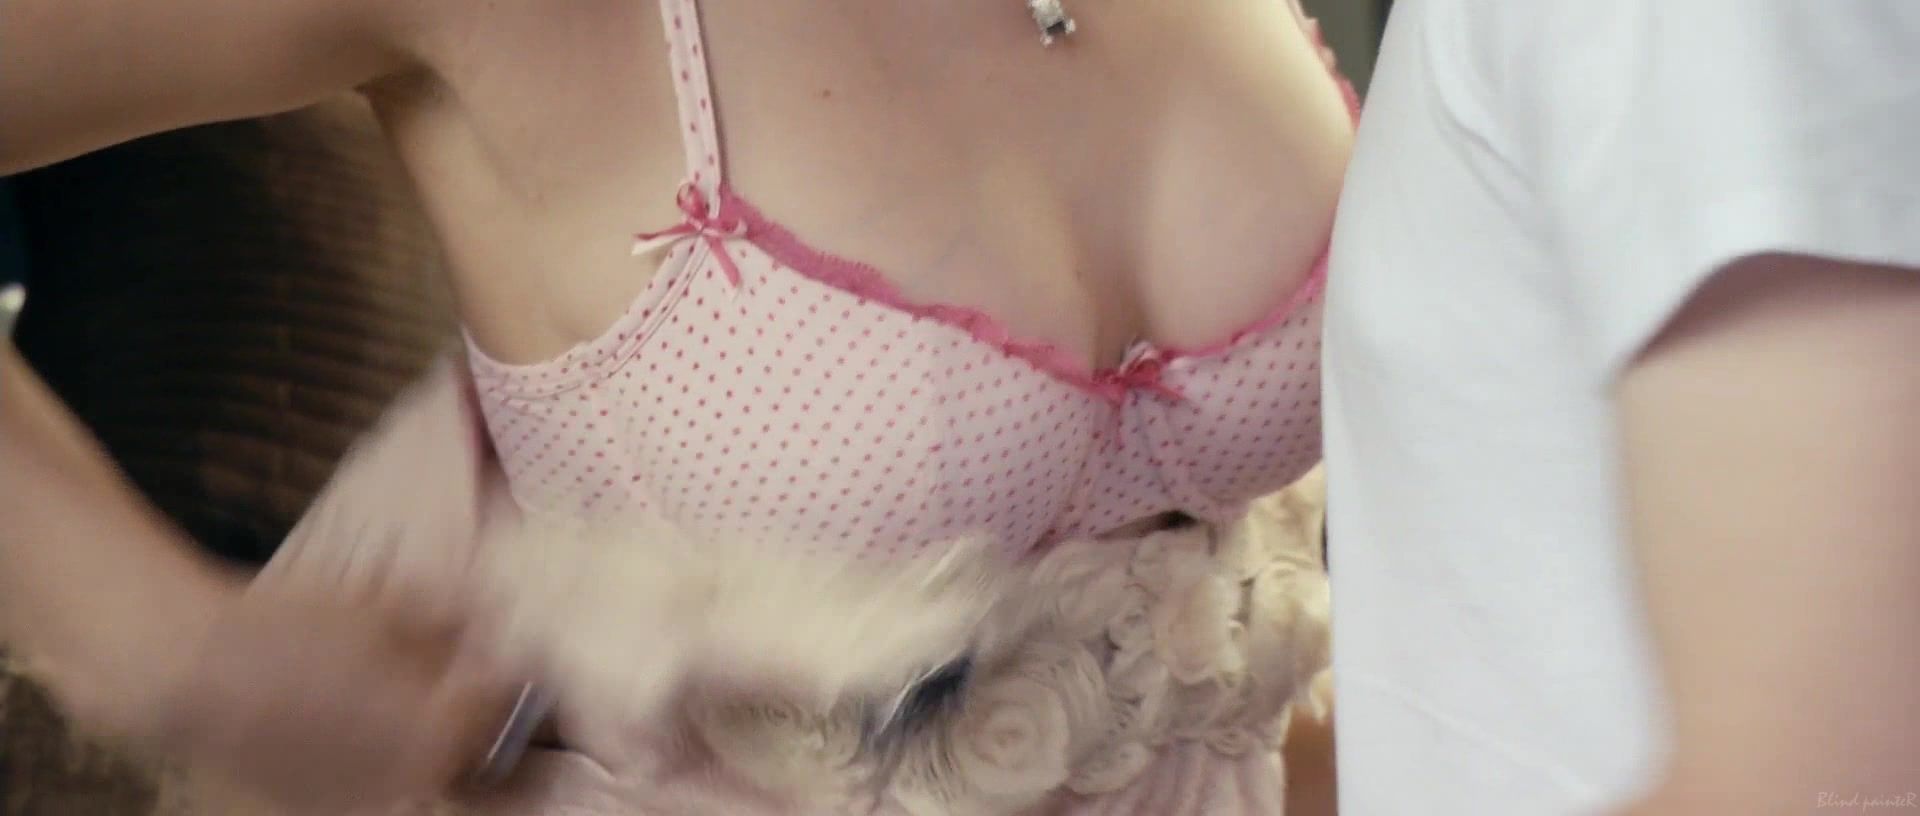 XBizShow Kimberley Nixon nude - Cherrybomb (2009) Twerking